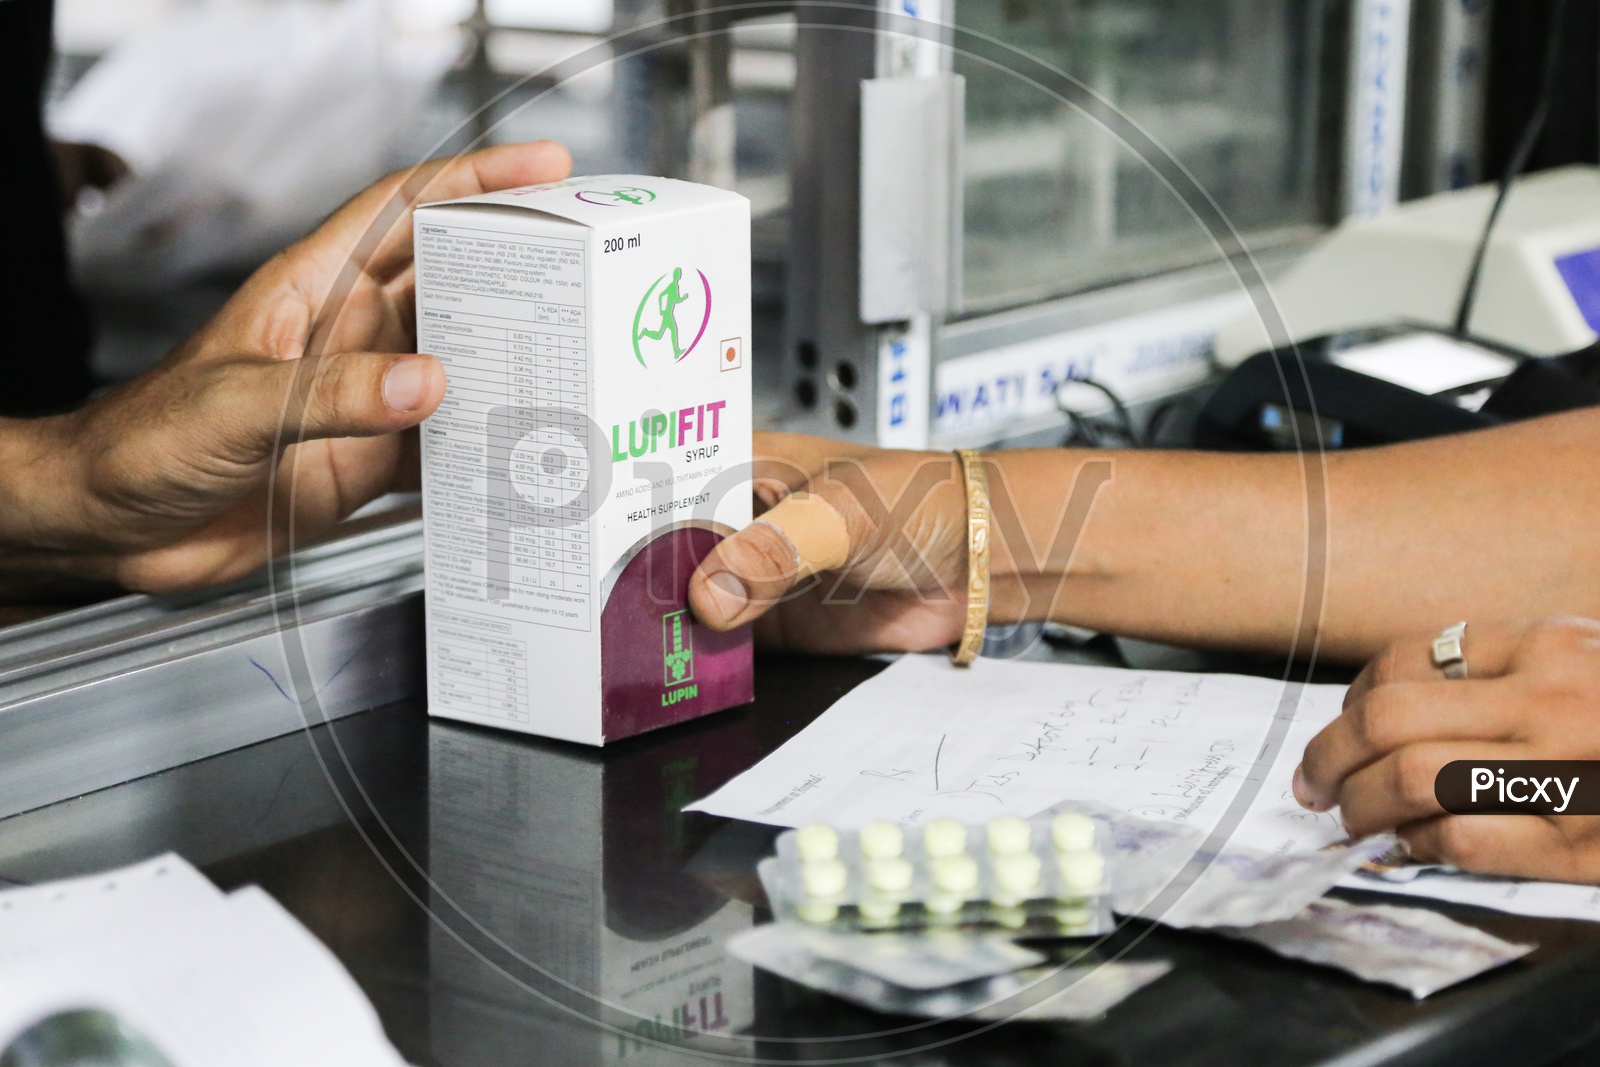 Women taking Medicines in Pharmacy shop